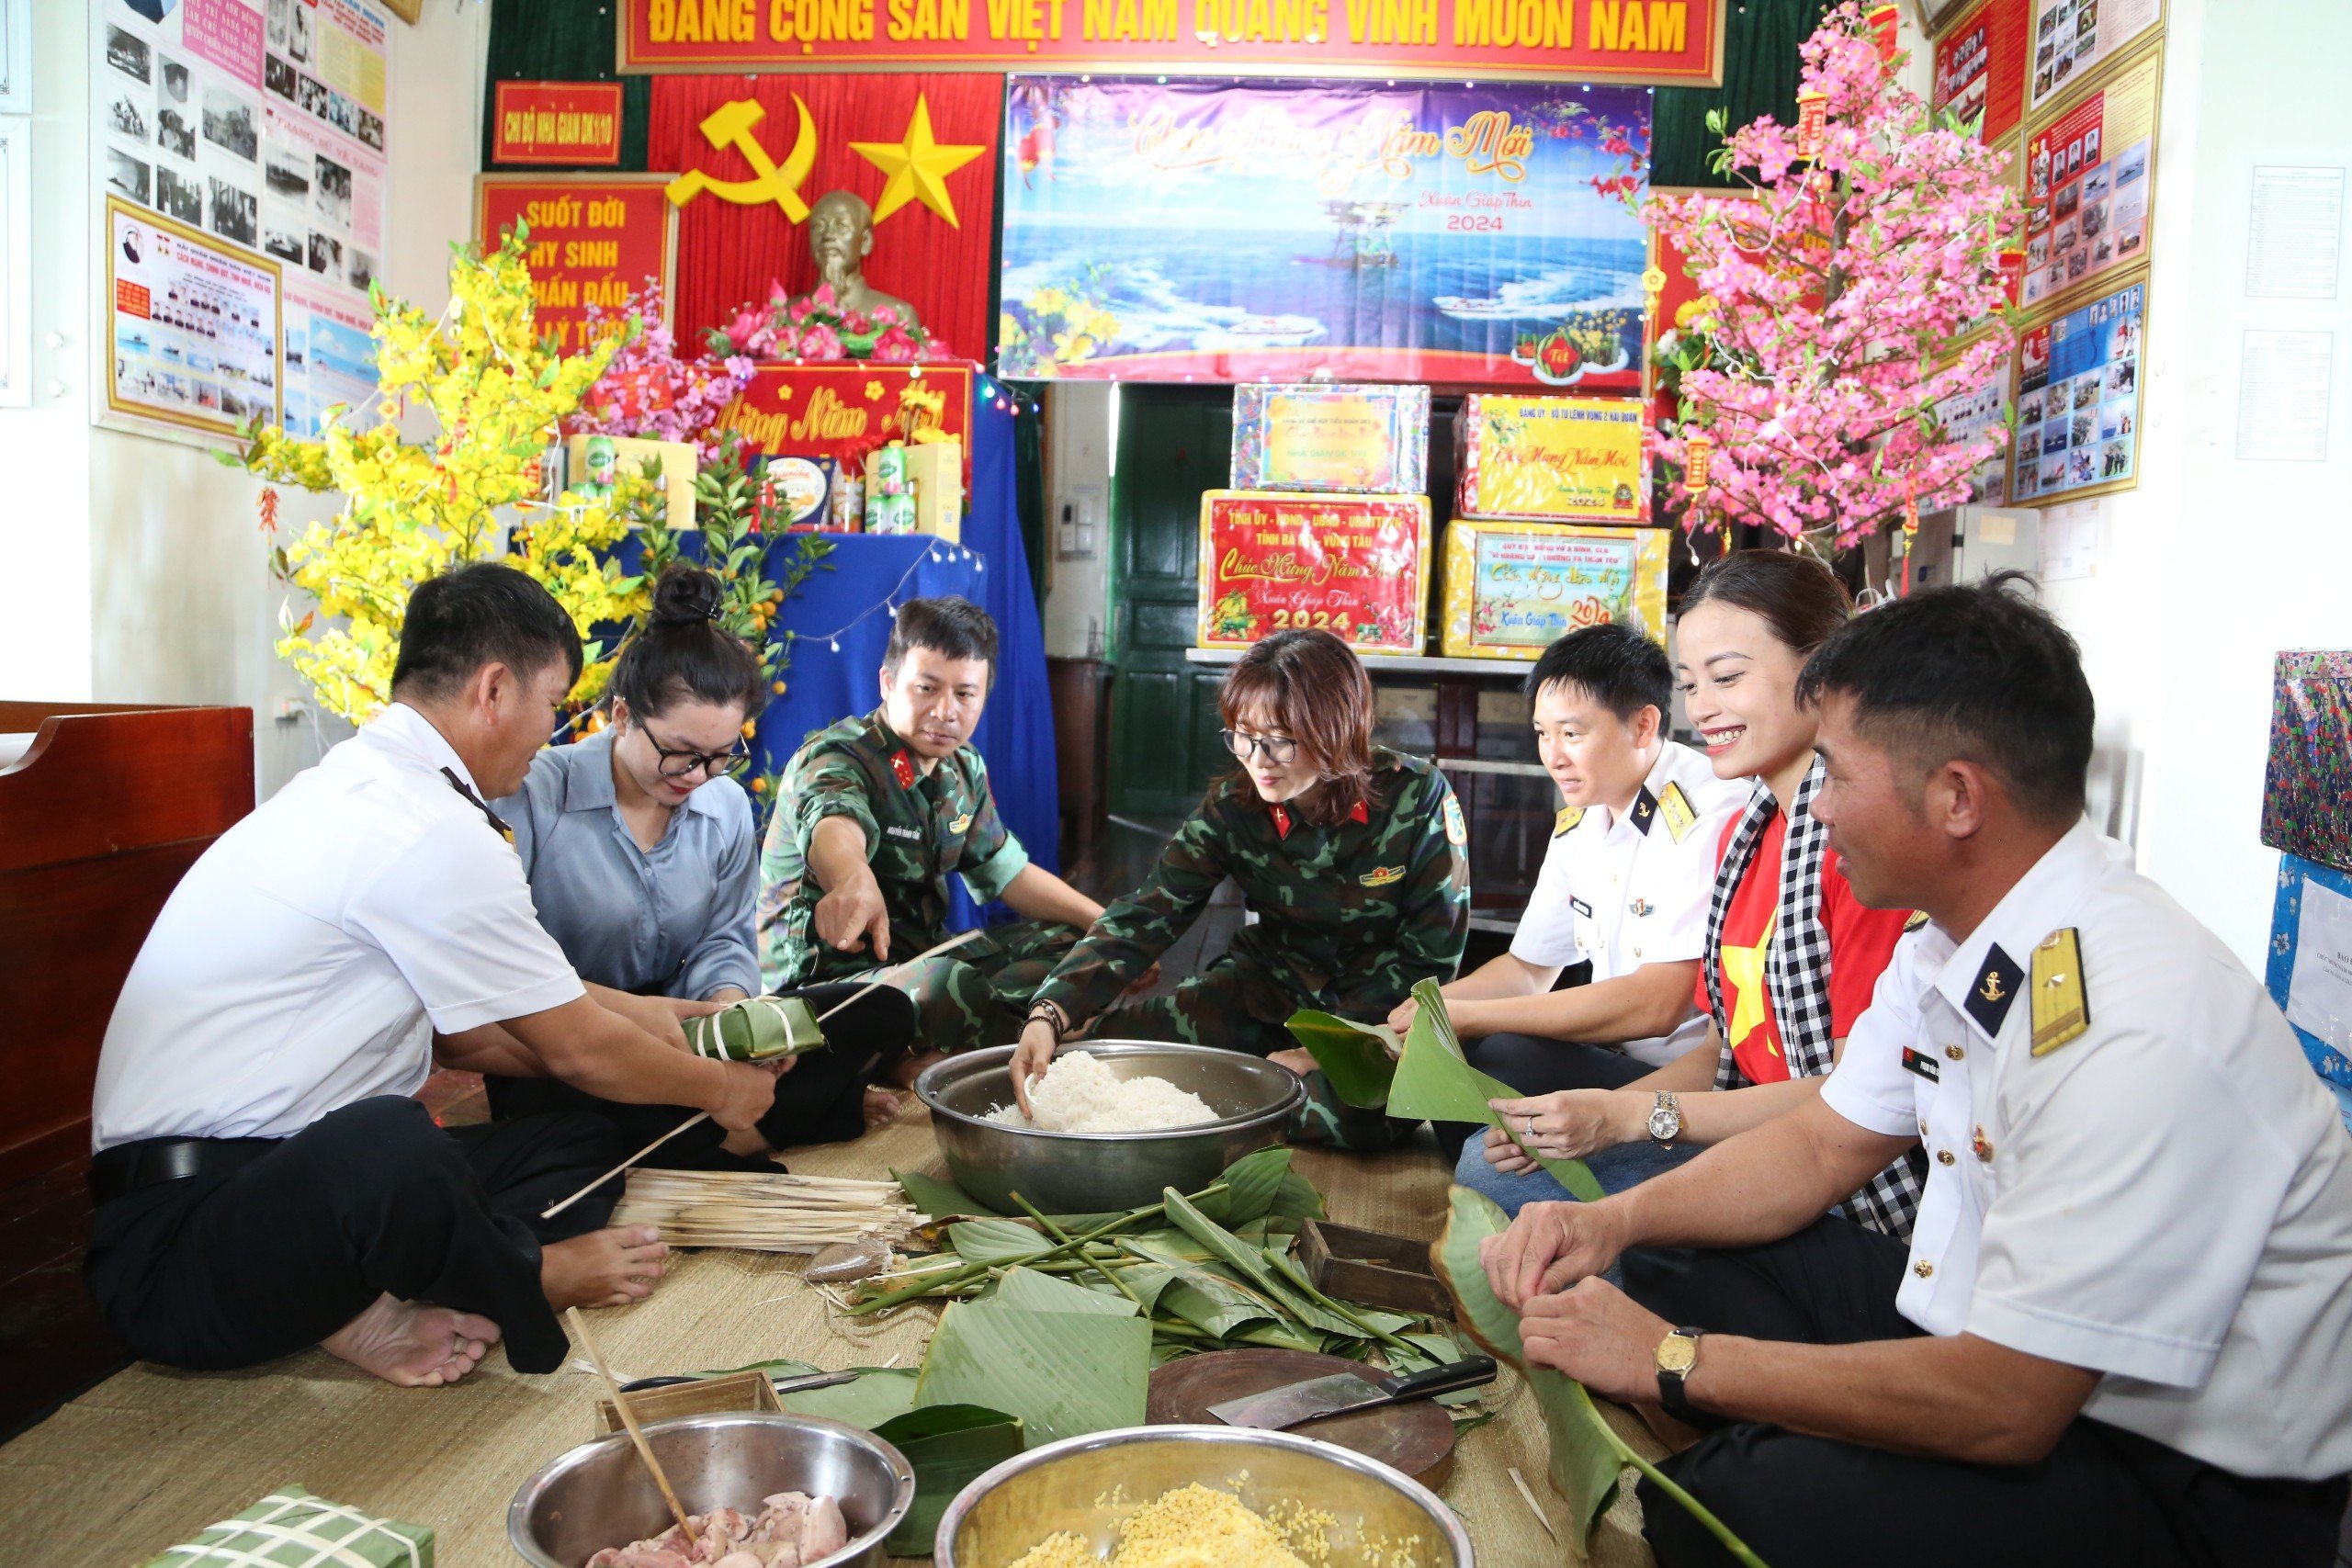 Đoàn công tác cùng cán bộ, chiến sĩ tại Nhà giàn DK1/10 tổ chức gói bánh chưng chào đón Tết Nguyên đán Giáp thìn 2024.